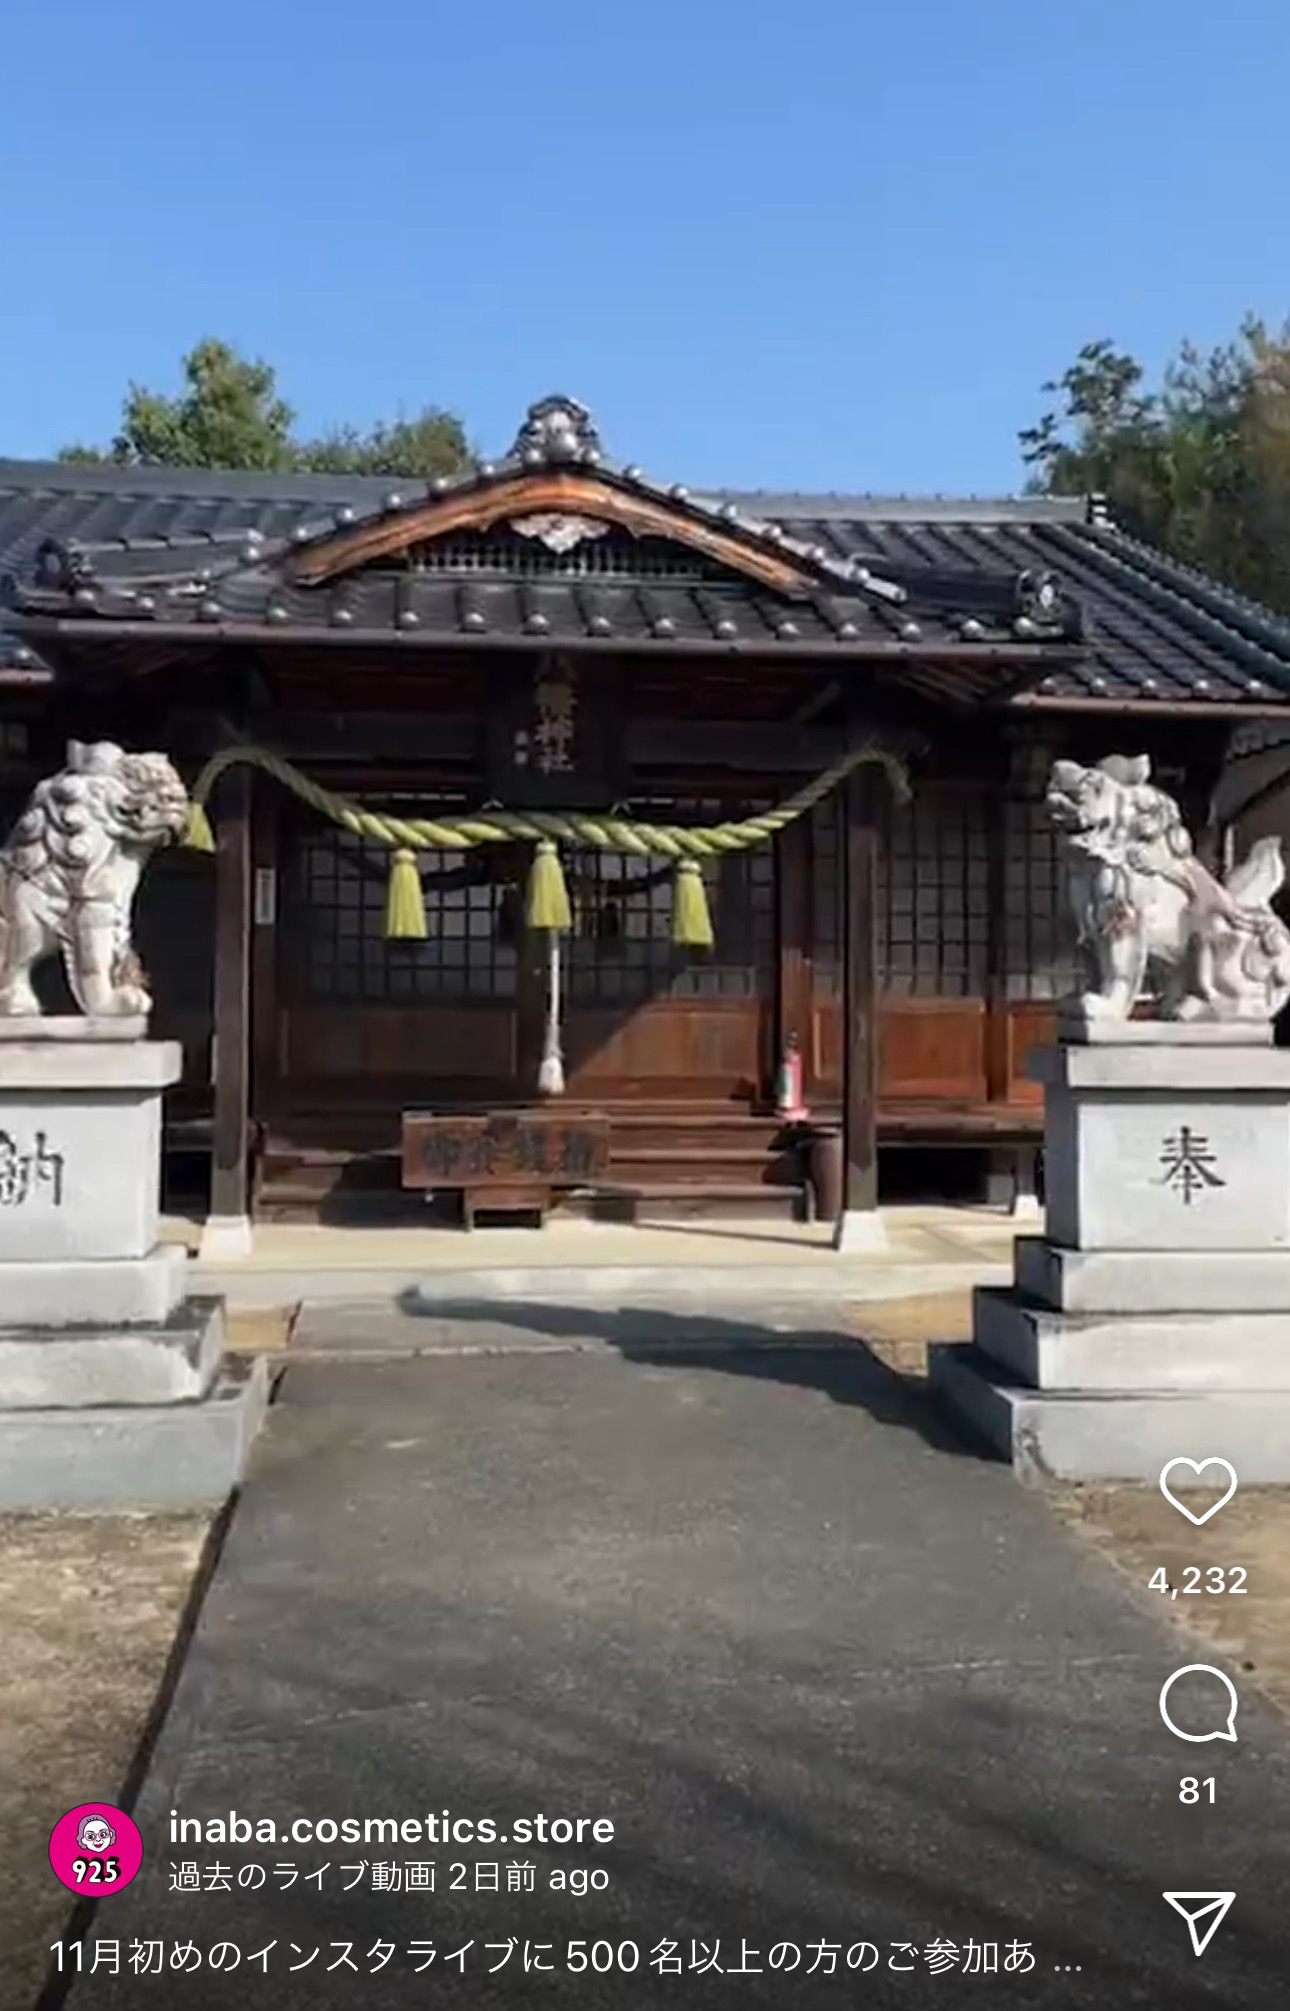 イナバ化粧品店のInstagtramライブ配信で八幡神社が映ったキャプチャ画像